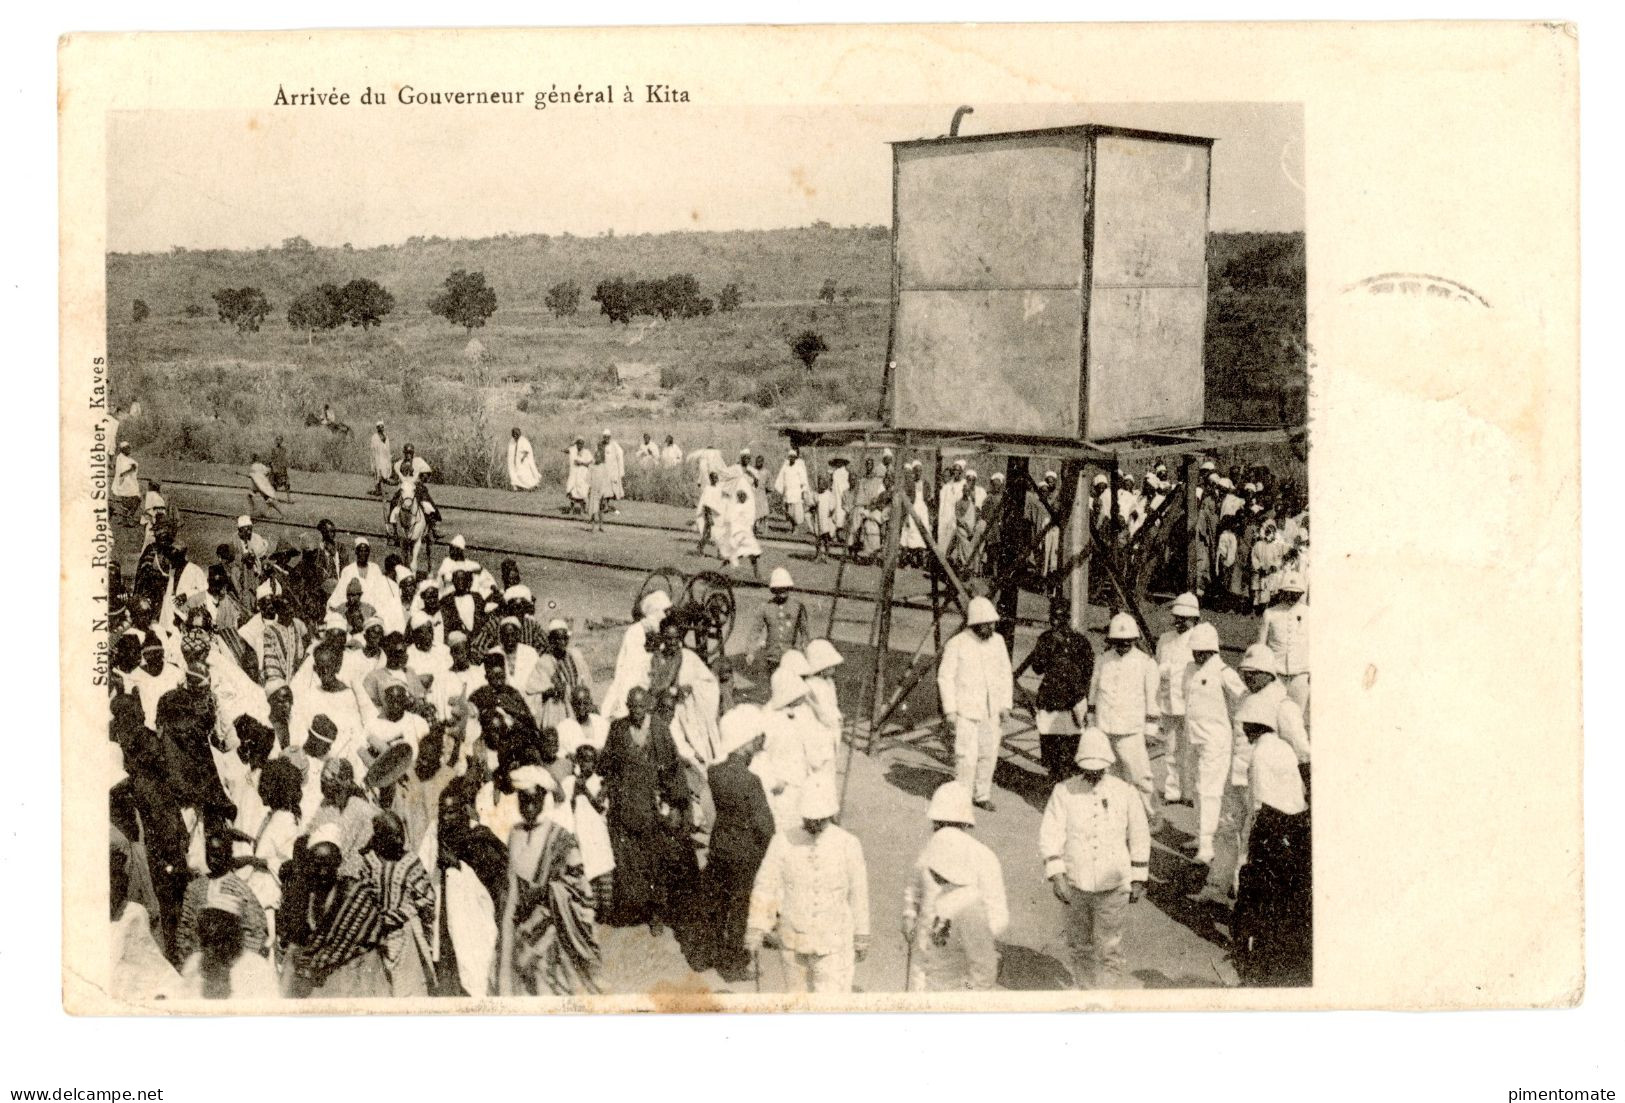 AFRIQUE OCCIDENTALE SOUDAN FRANCAIS ARRIVEE DU GOUVERNEUR GENERAL A KITA 1906 - Mali